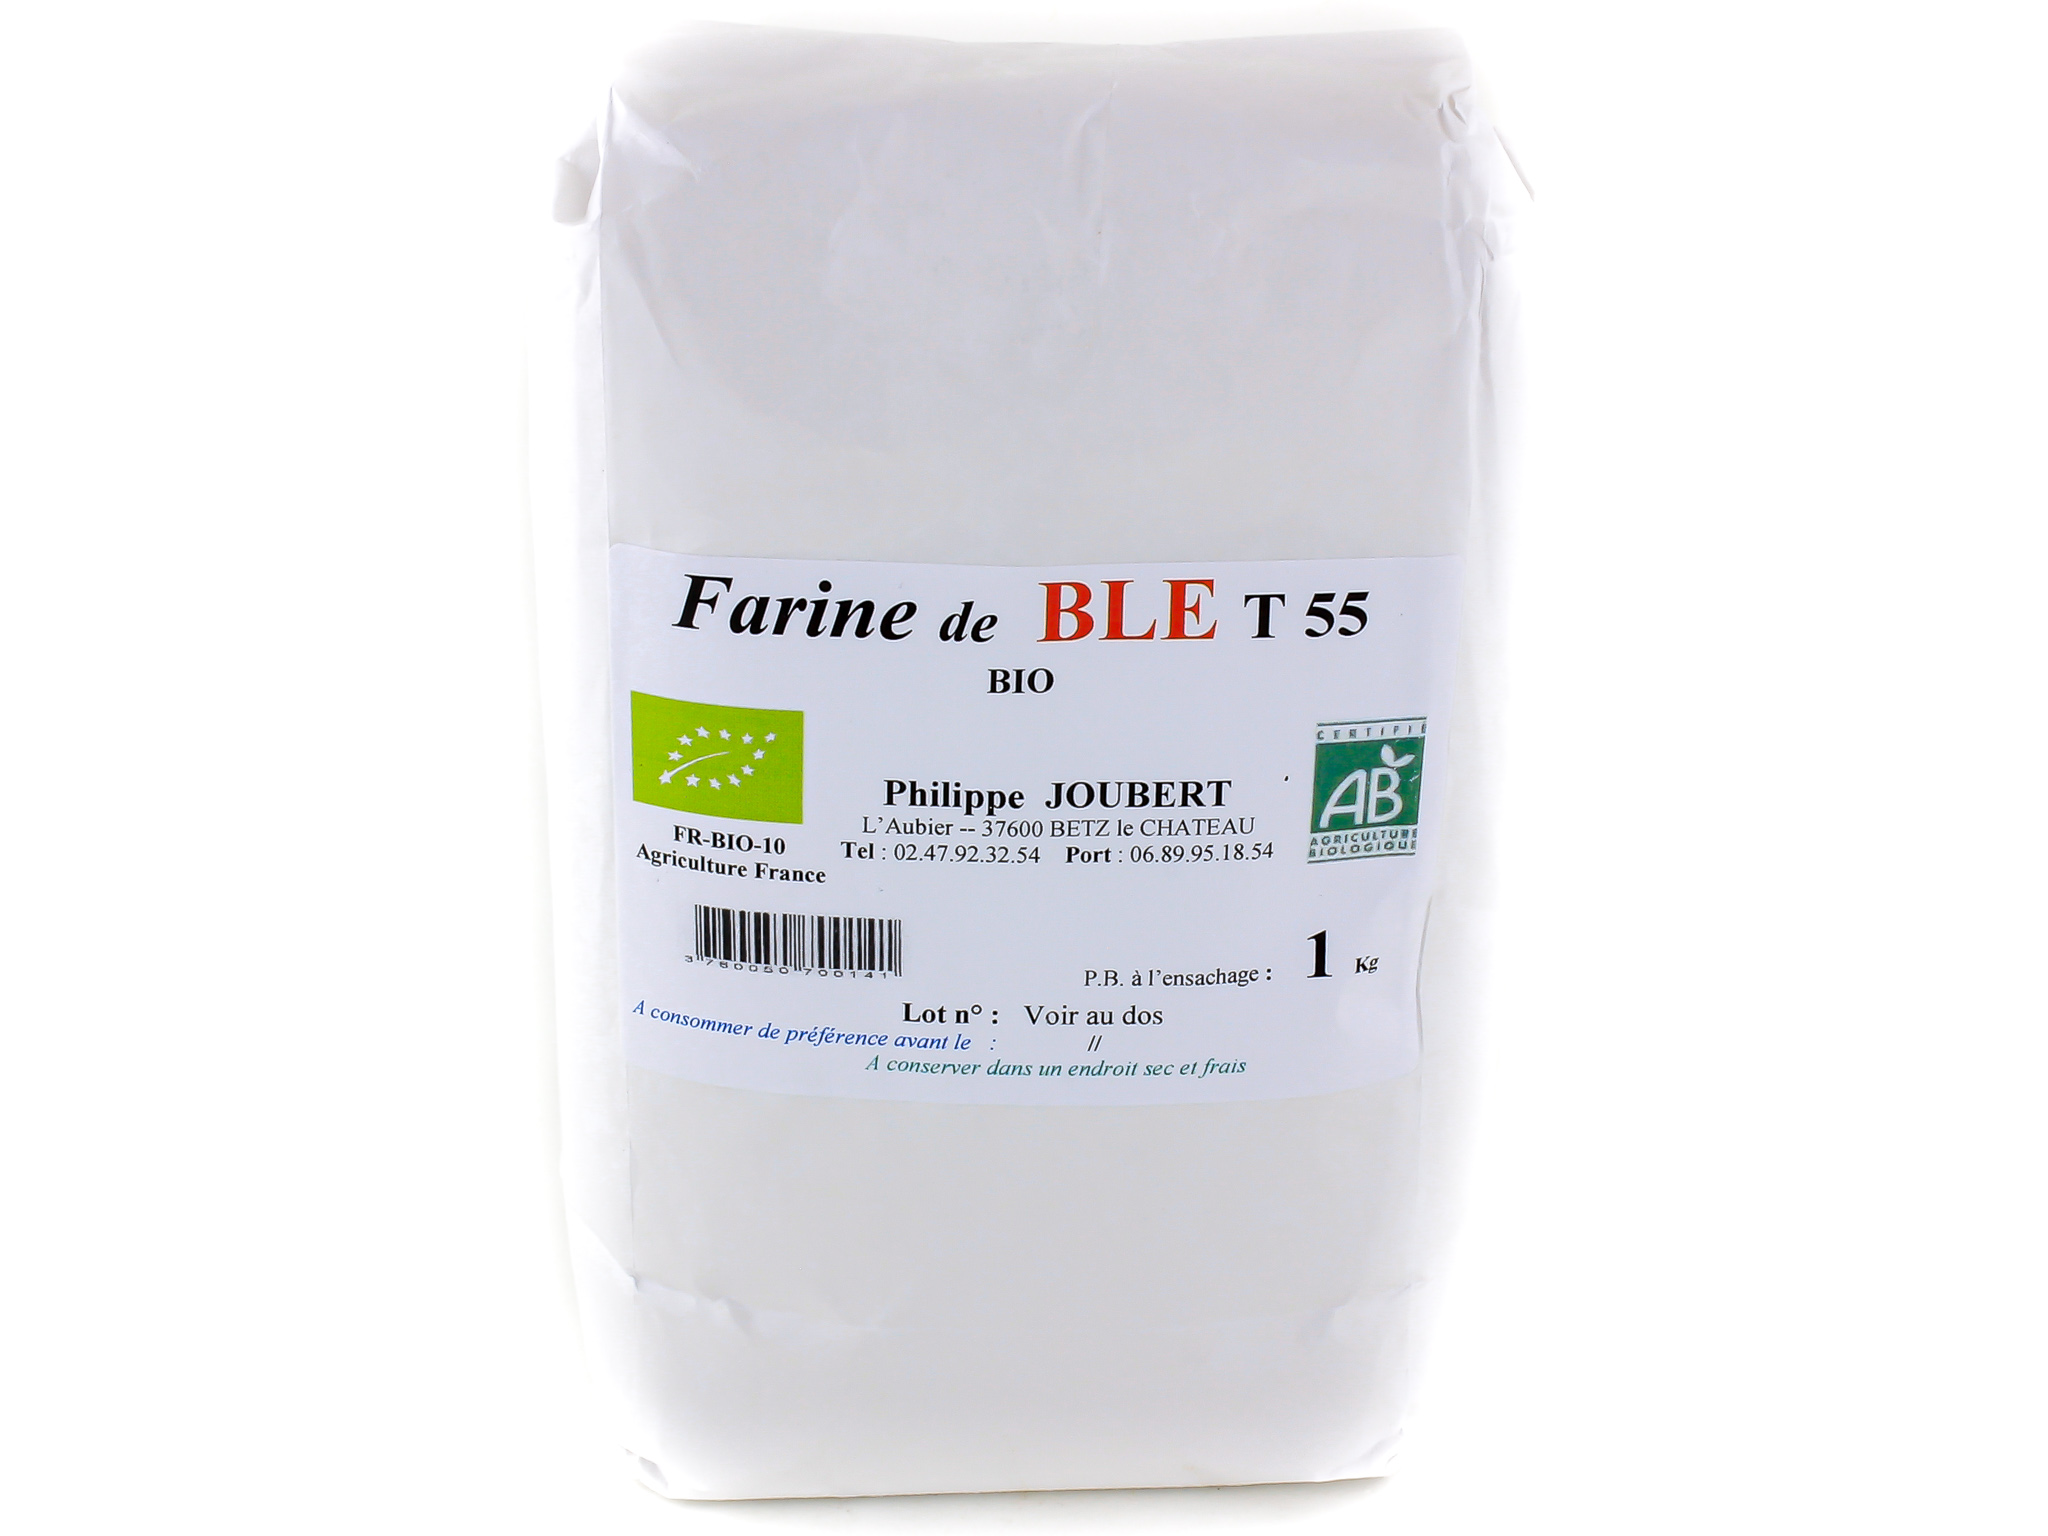 Farine de blé T55 Bio